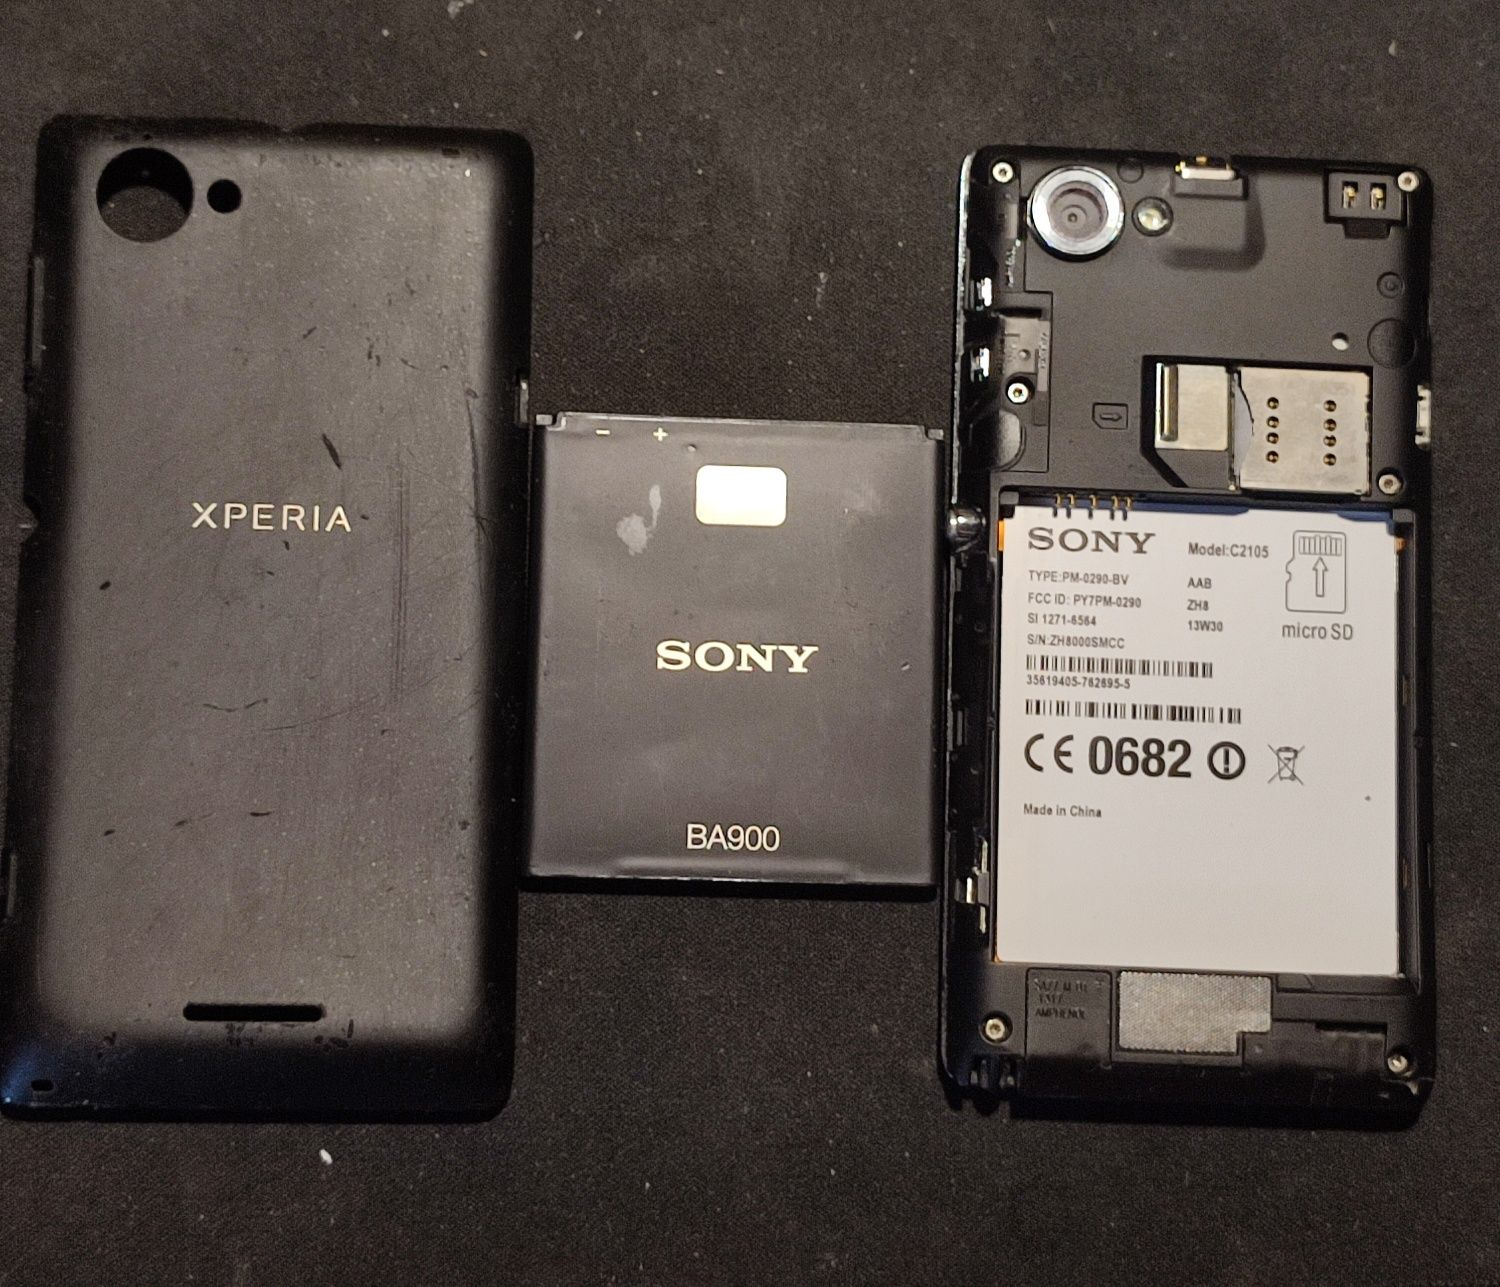 Sony Xperia C2105 + Sony Xperia E15i